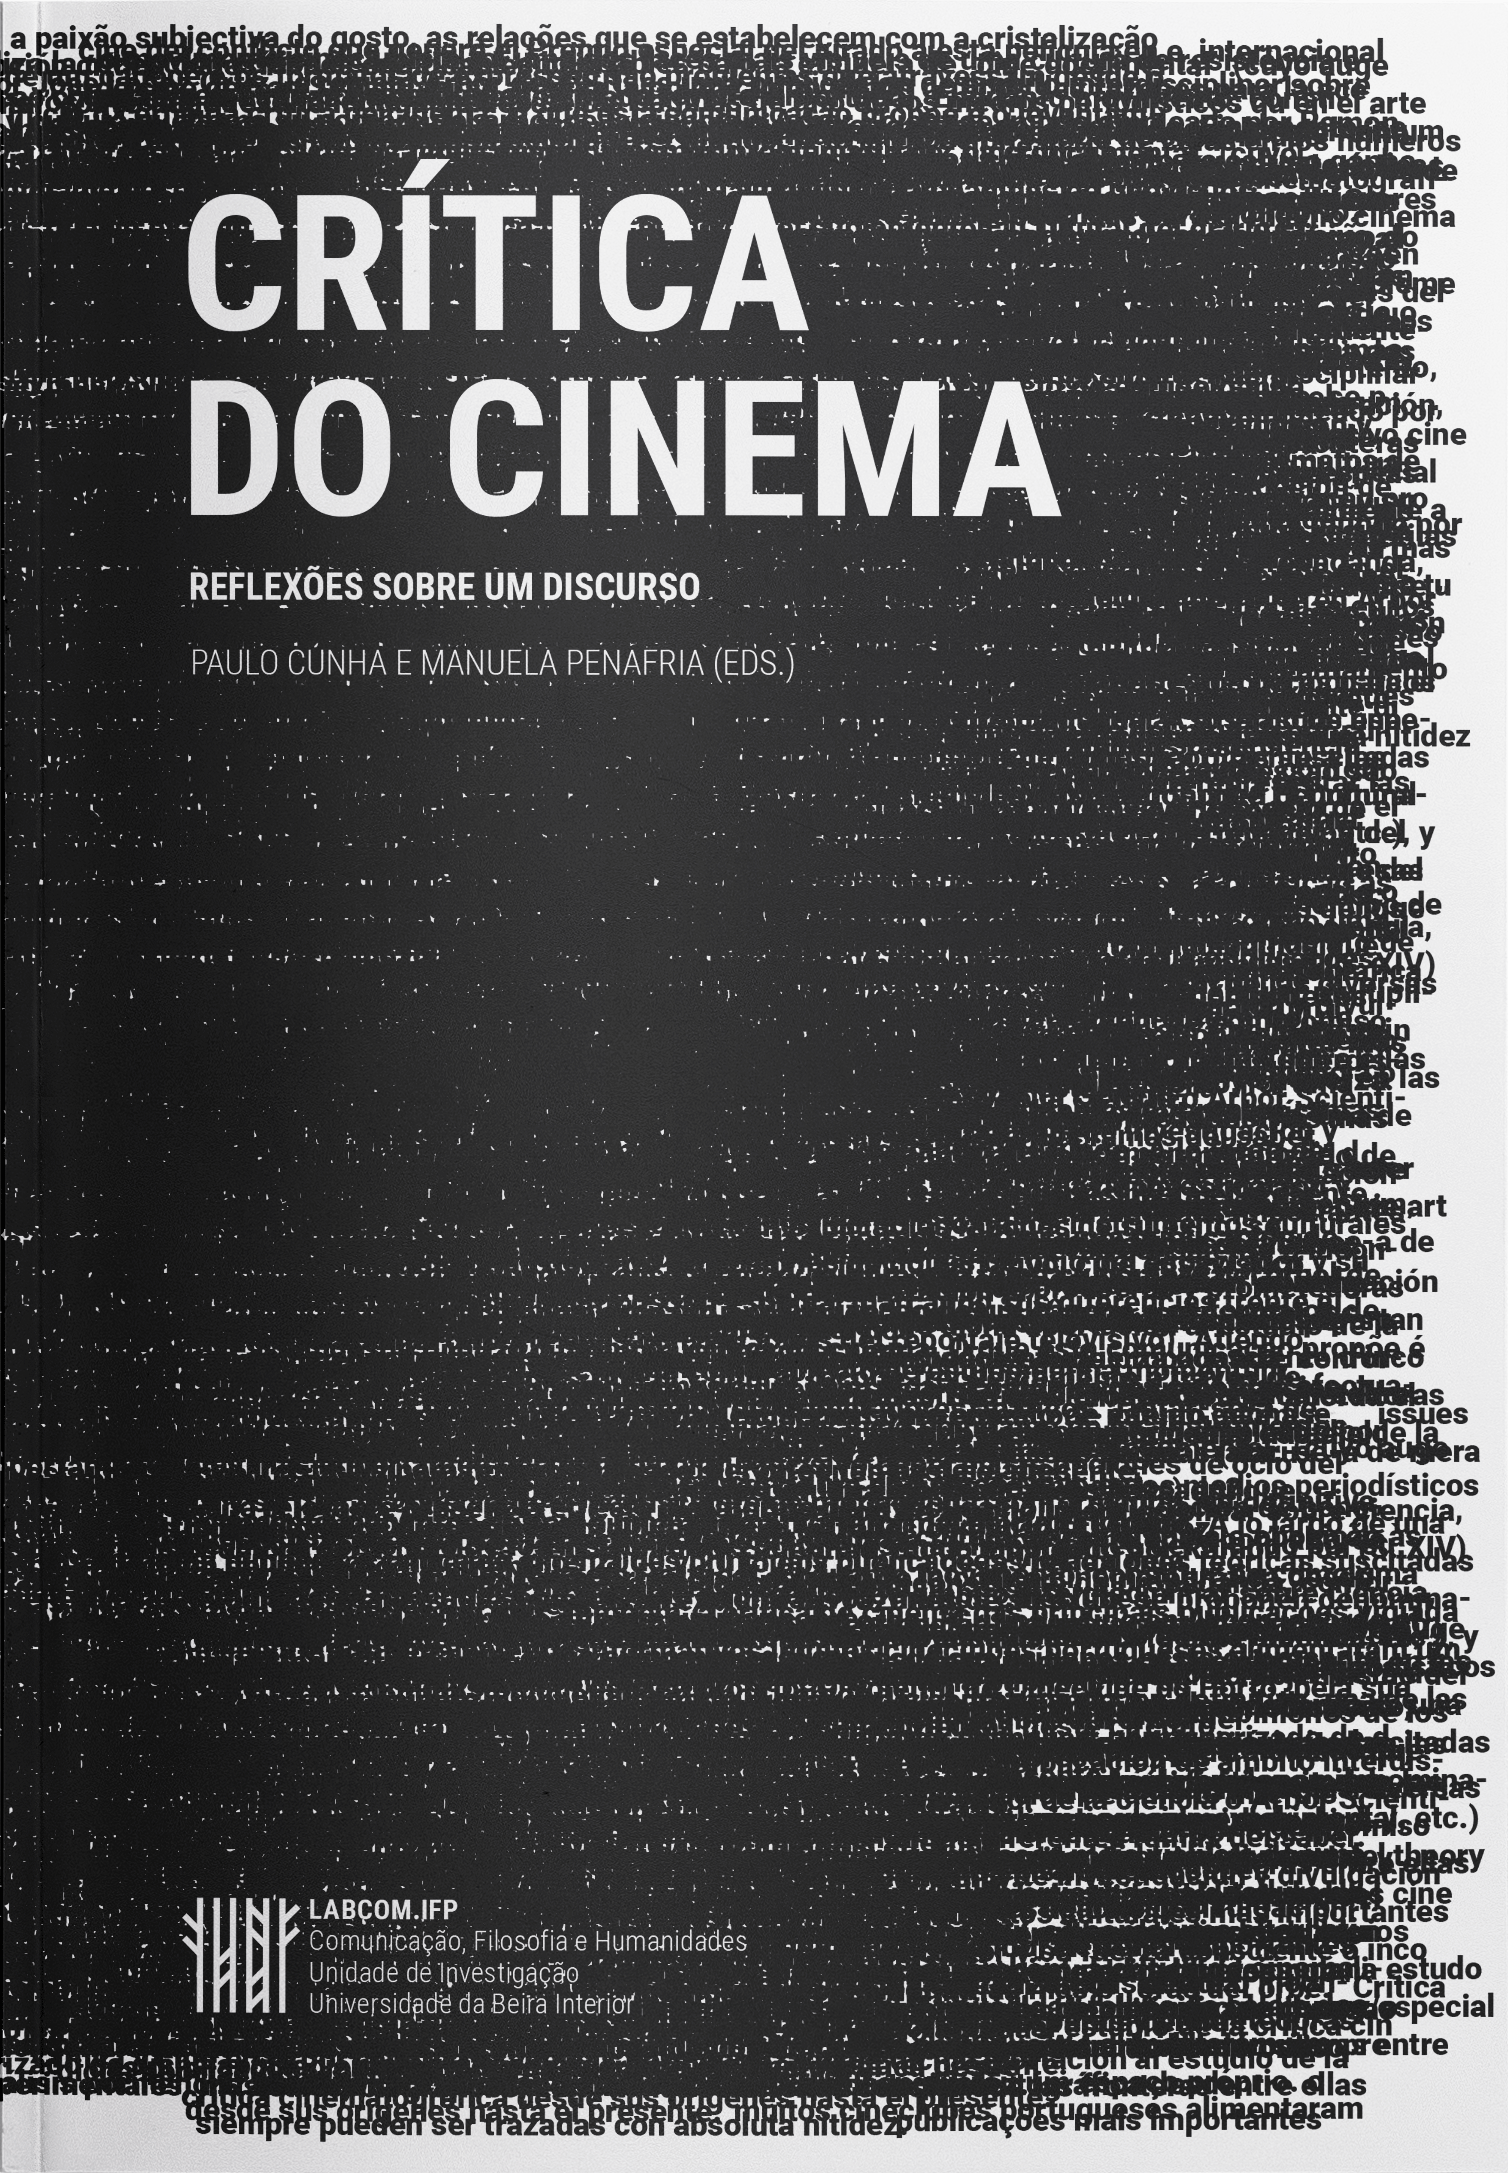 Capa: Paulo Cunha e Manuela Penafria (2017) Crítica do Cinema. Reflexões sobre um discurso. Communication  +  Philosophy  +  Humanities. .